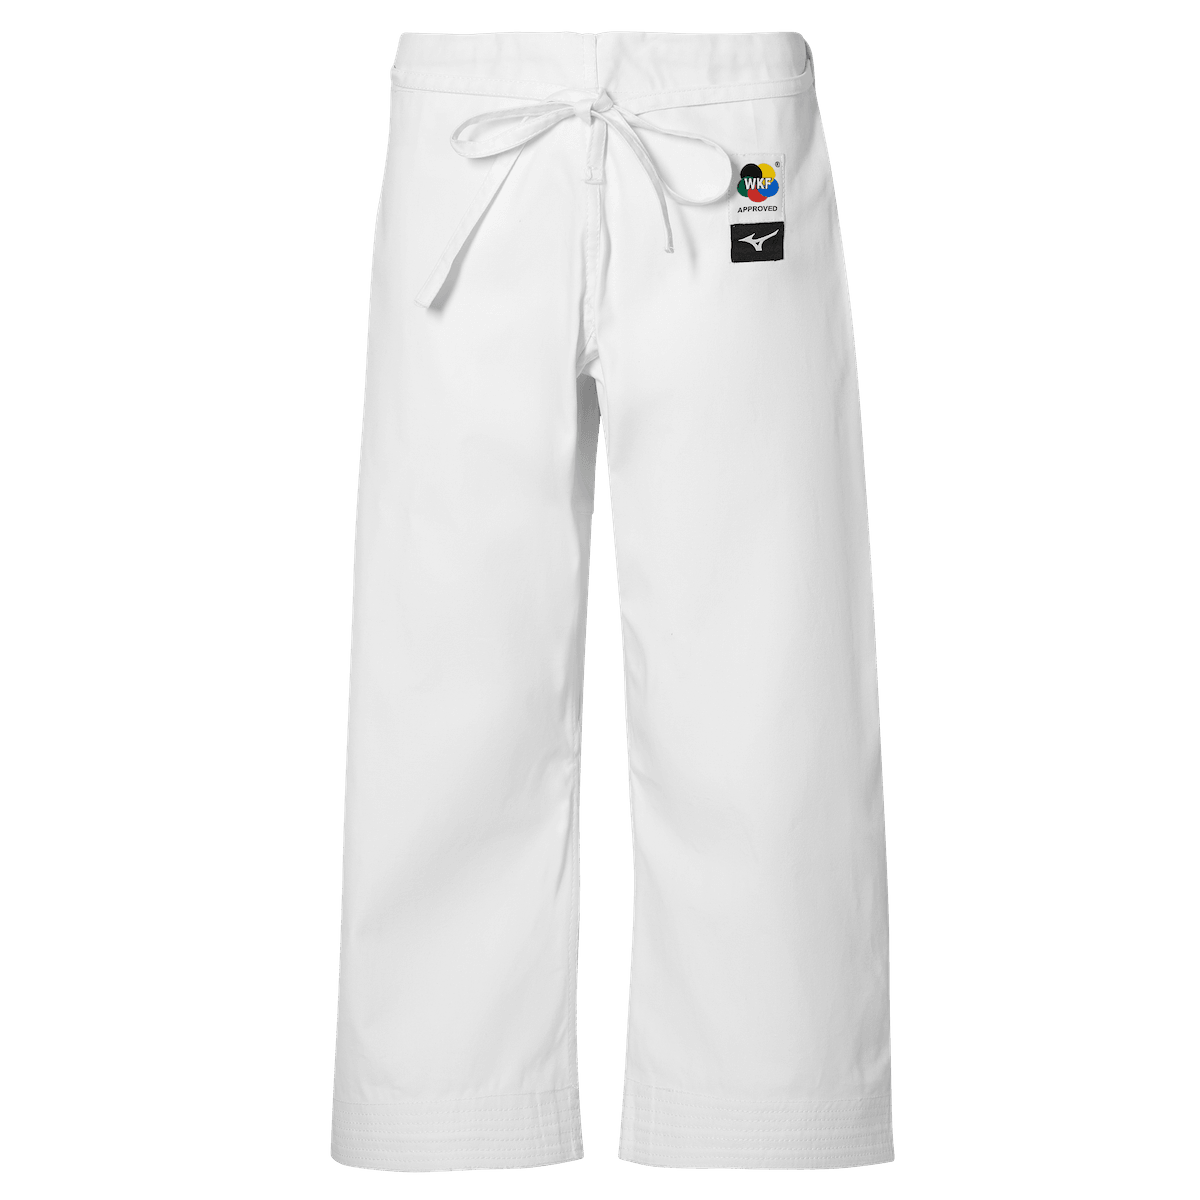 Pantalon de Karate Mizuno Kata Kime WKF - Blanc - Boutique des Arts Martiaux